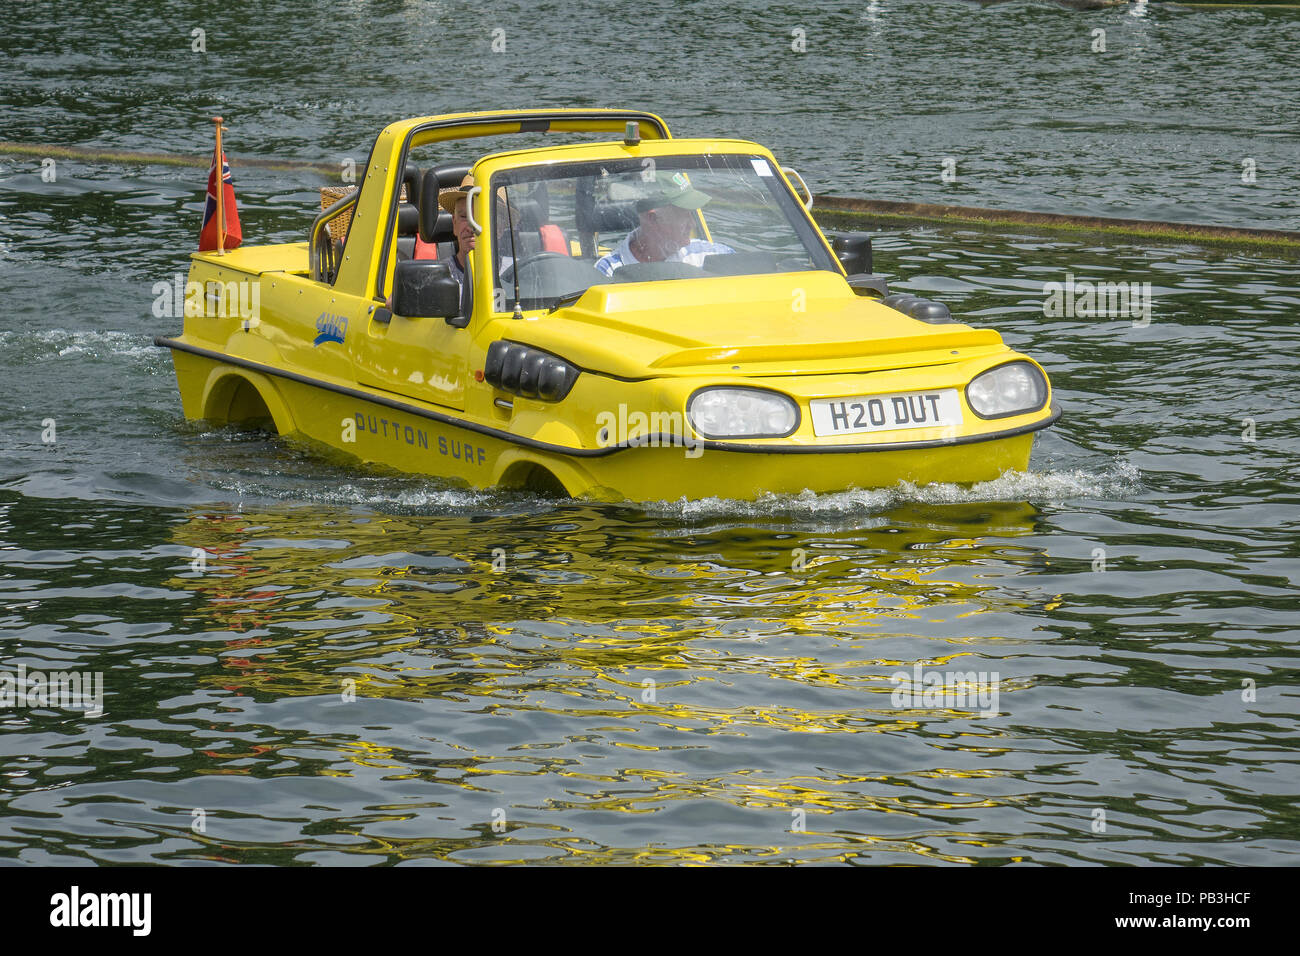 England, Oxfordshire, Henley, Themse, Dutton Surf amphibische Auto Stockfoto